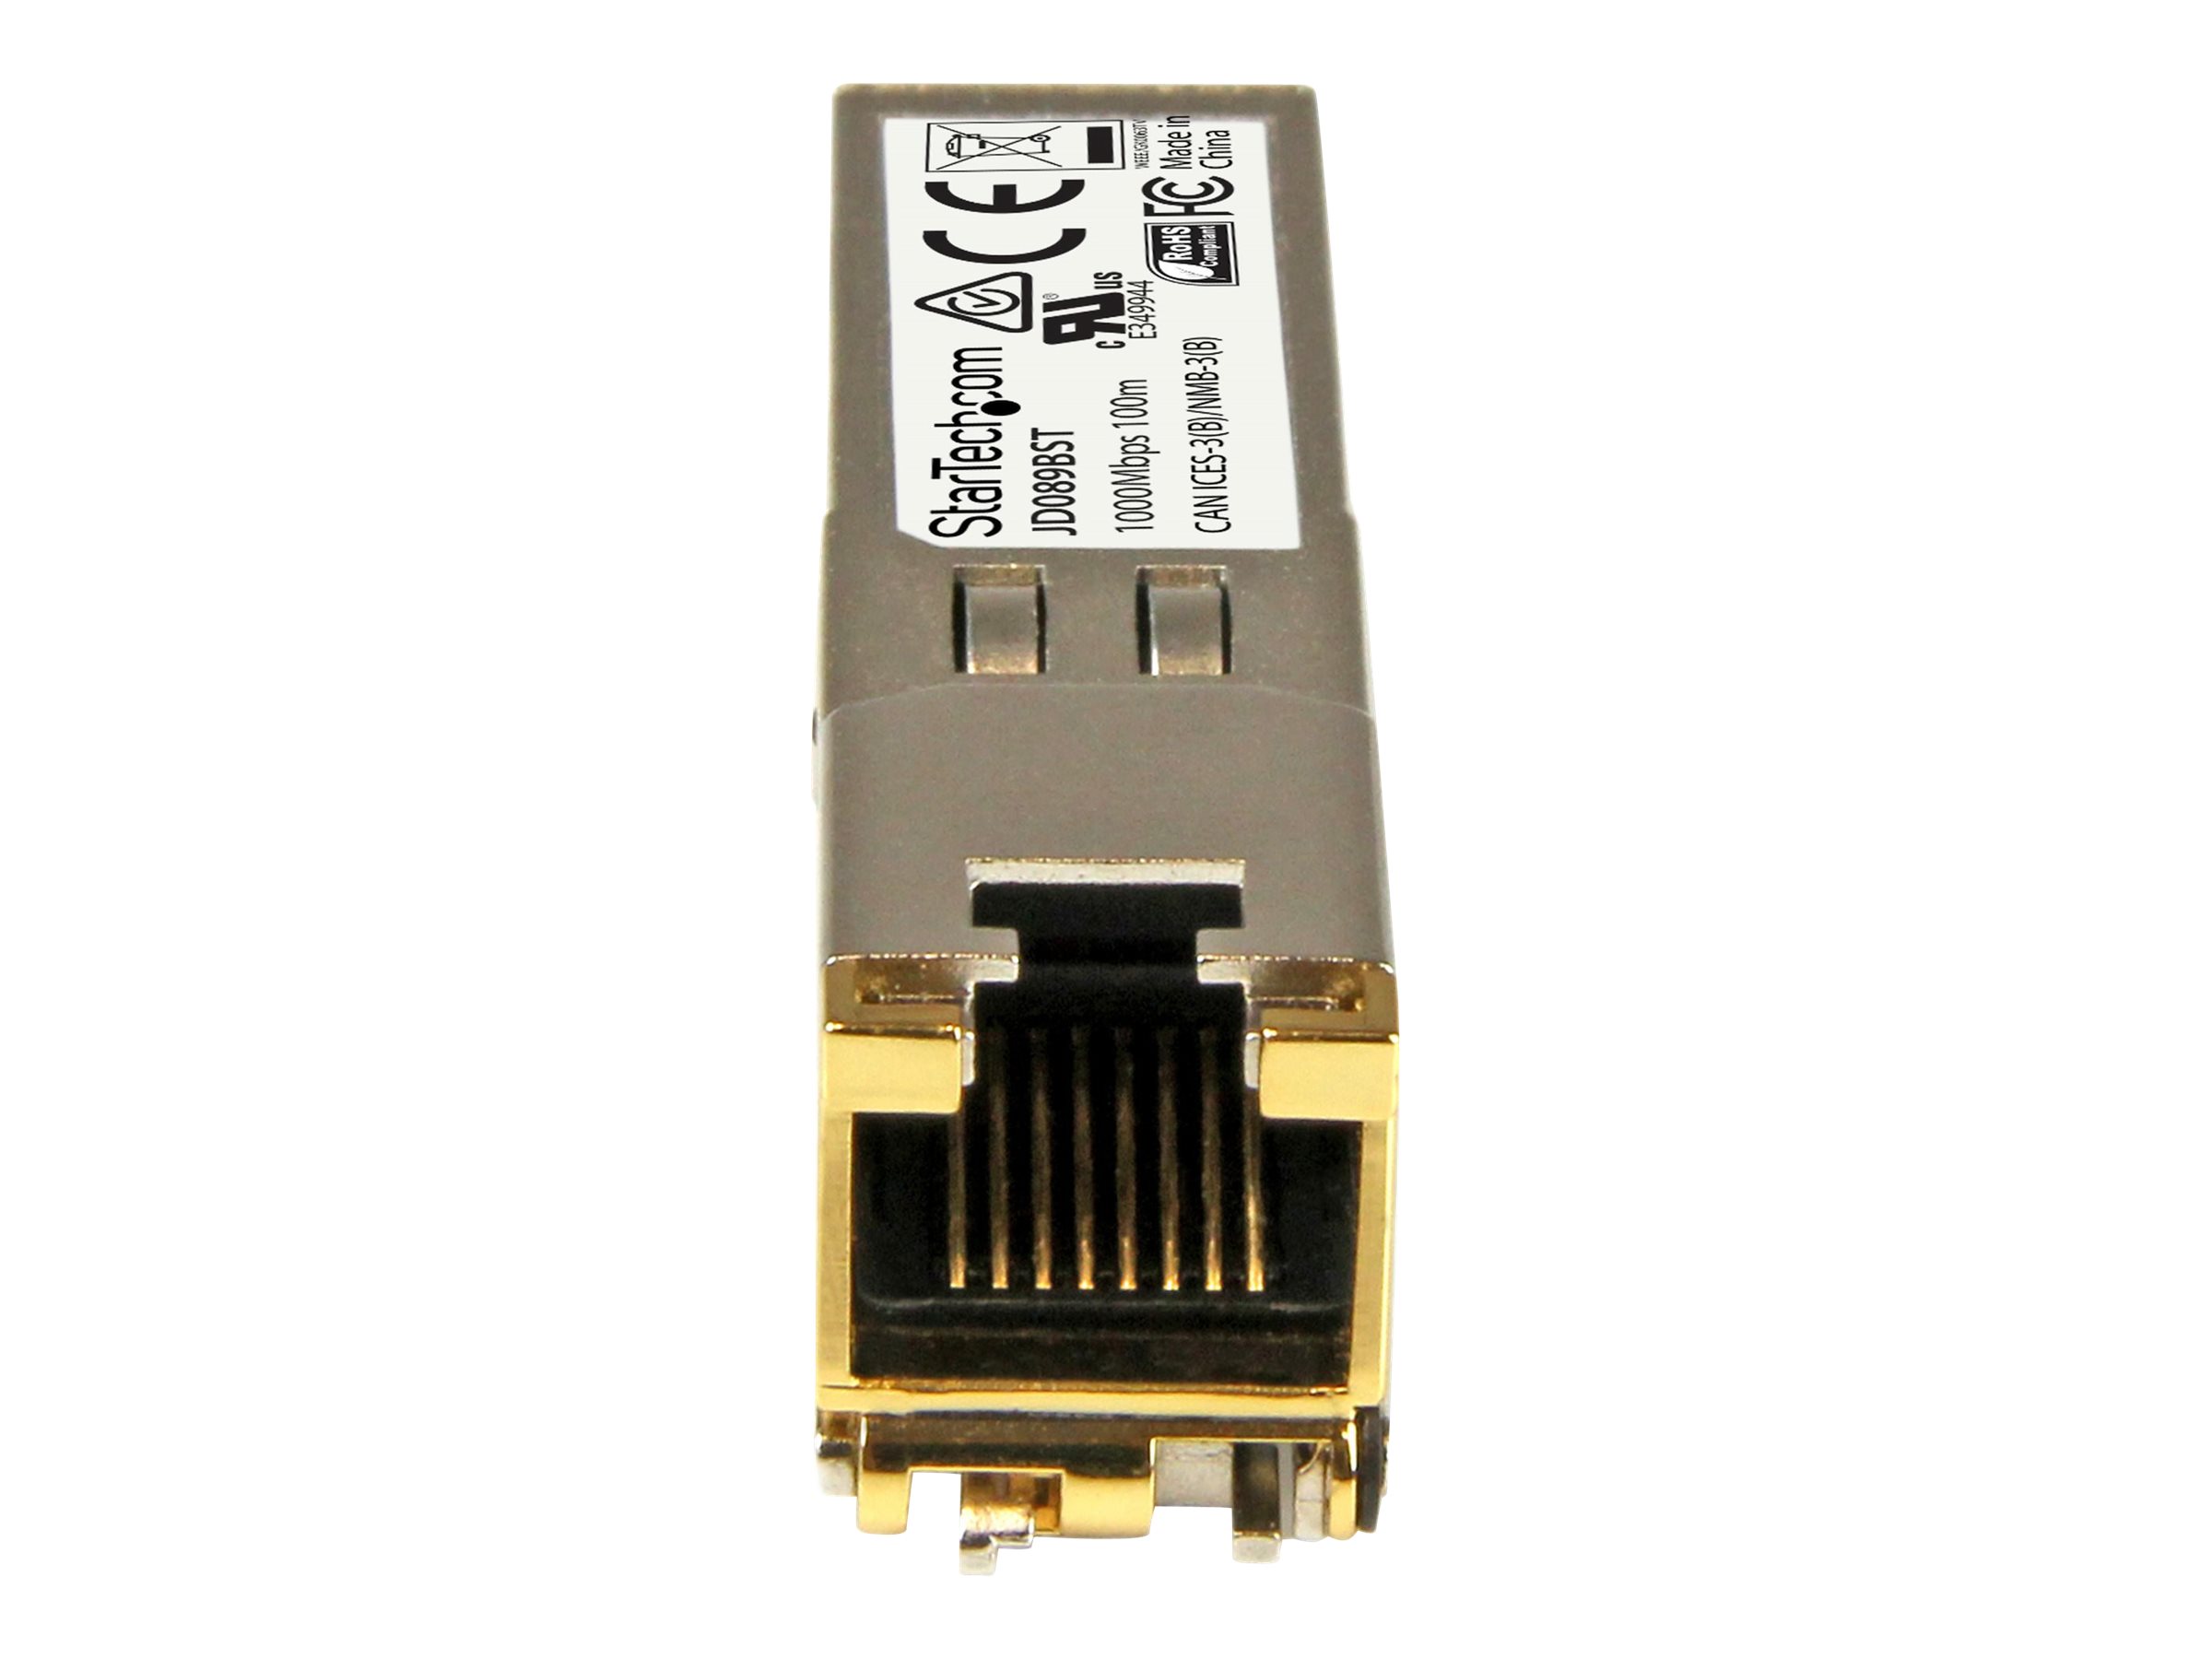 StarTech.com SFP RJ45 - 1000Base-T - Module SFP cuivre - Gigabit - Compatible HP JD089B - SFP 1G - Mini-GBIC - 100 m - Module transmetteur SFP (mini-GBIC) (équivalent à : HP JD089B) - 1GbE - 1000Base-T - RJ-45 - jusqu'à 100 m - JD089BST - Transmetteurs SFP